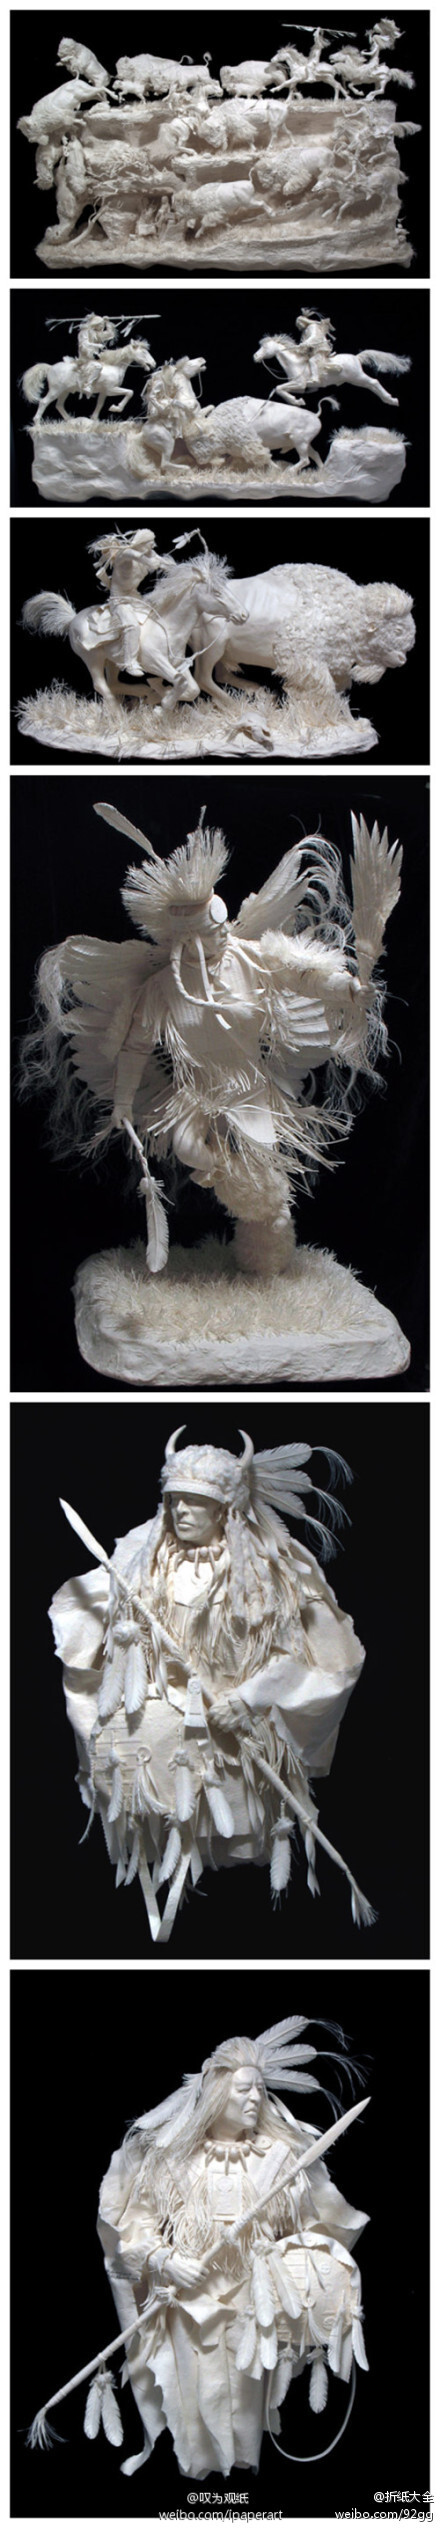 #纸艺欣赏#由两位艺术家Allen & Patty Eckman带来的超精致纯白纸雕作品。作品非常生动地描绘出了印第安原住民的人物形象和狩猎场景，并十分具有动态感。这一系列纸雕作品在制作过程上也非常复杂，首先将纸浆与棉等不同材质混合注入模型，把其中的水分取出后脱模，再在半成品上进行修改装饰并添加细节。